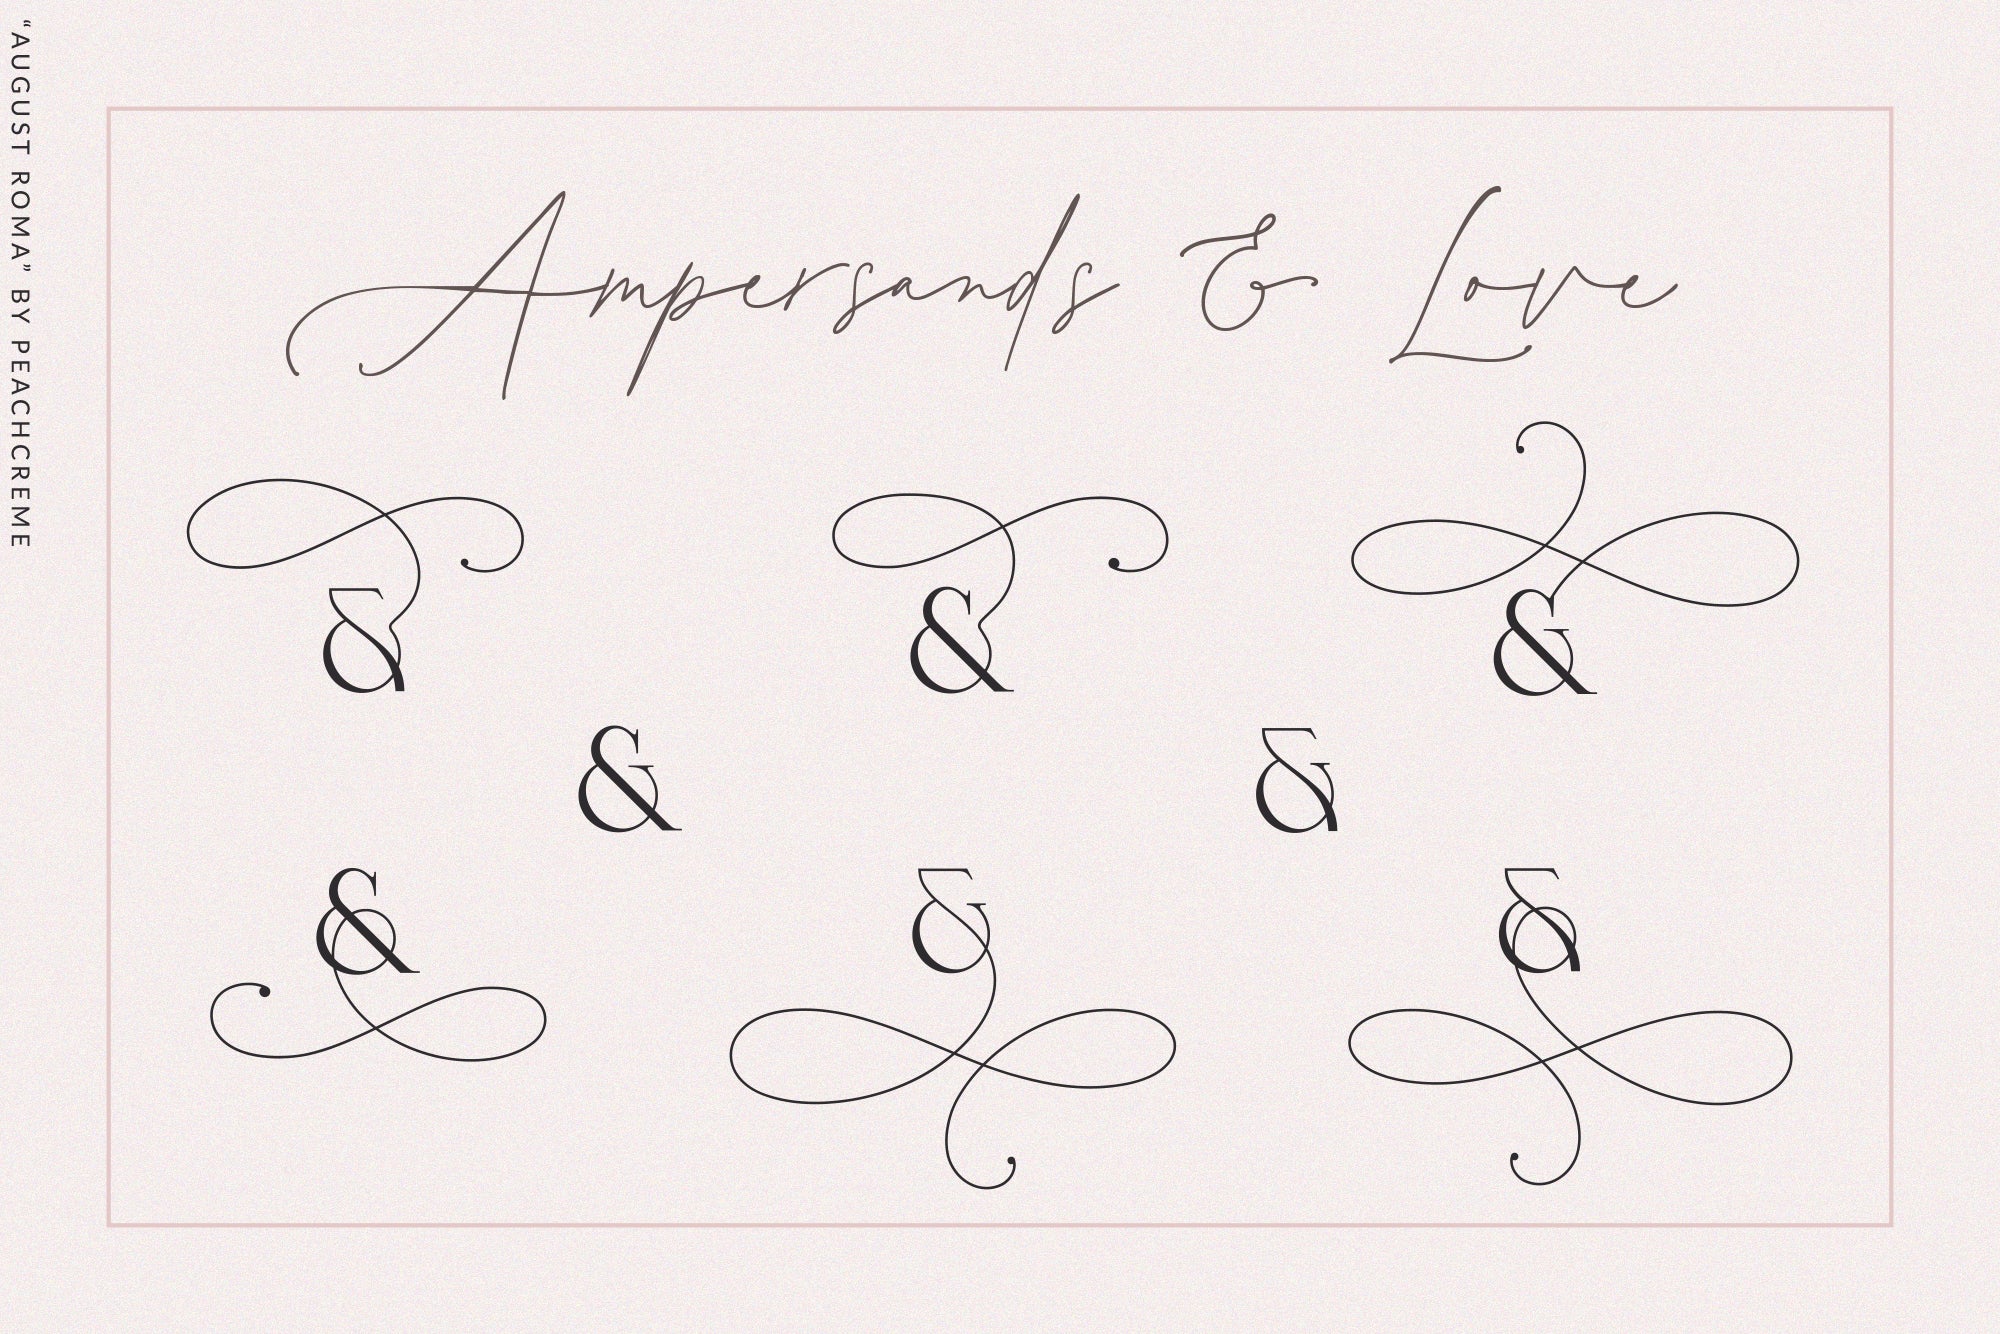 August Roma // Elegant Luxury Font Duo